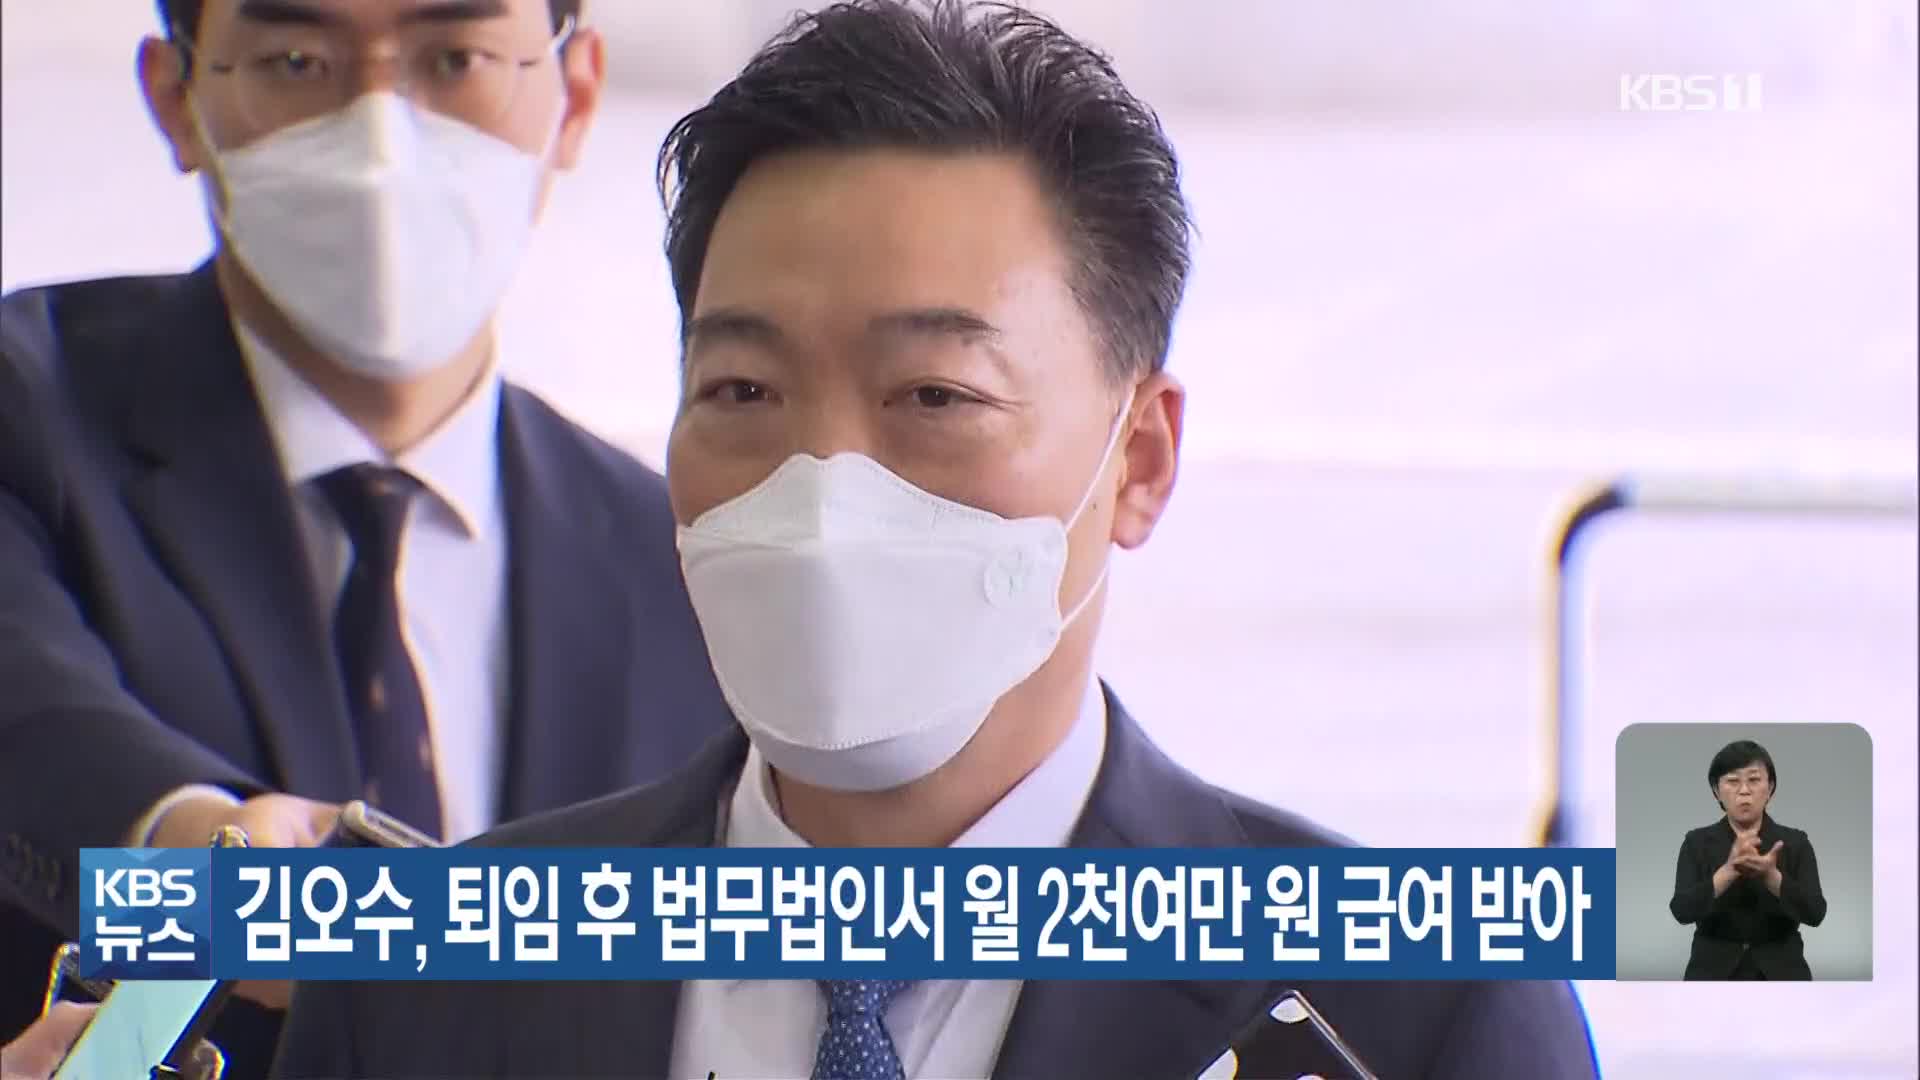 김오수, 퇴임 후 법무법인서 월 2천여만 원 급여받아